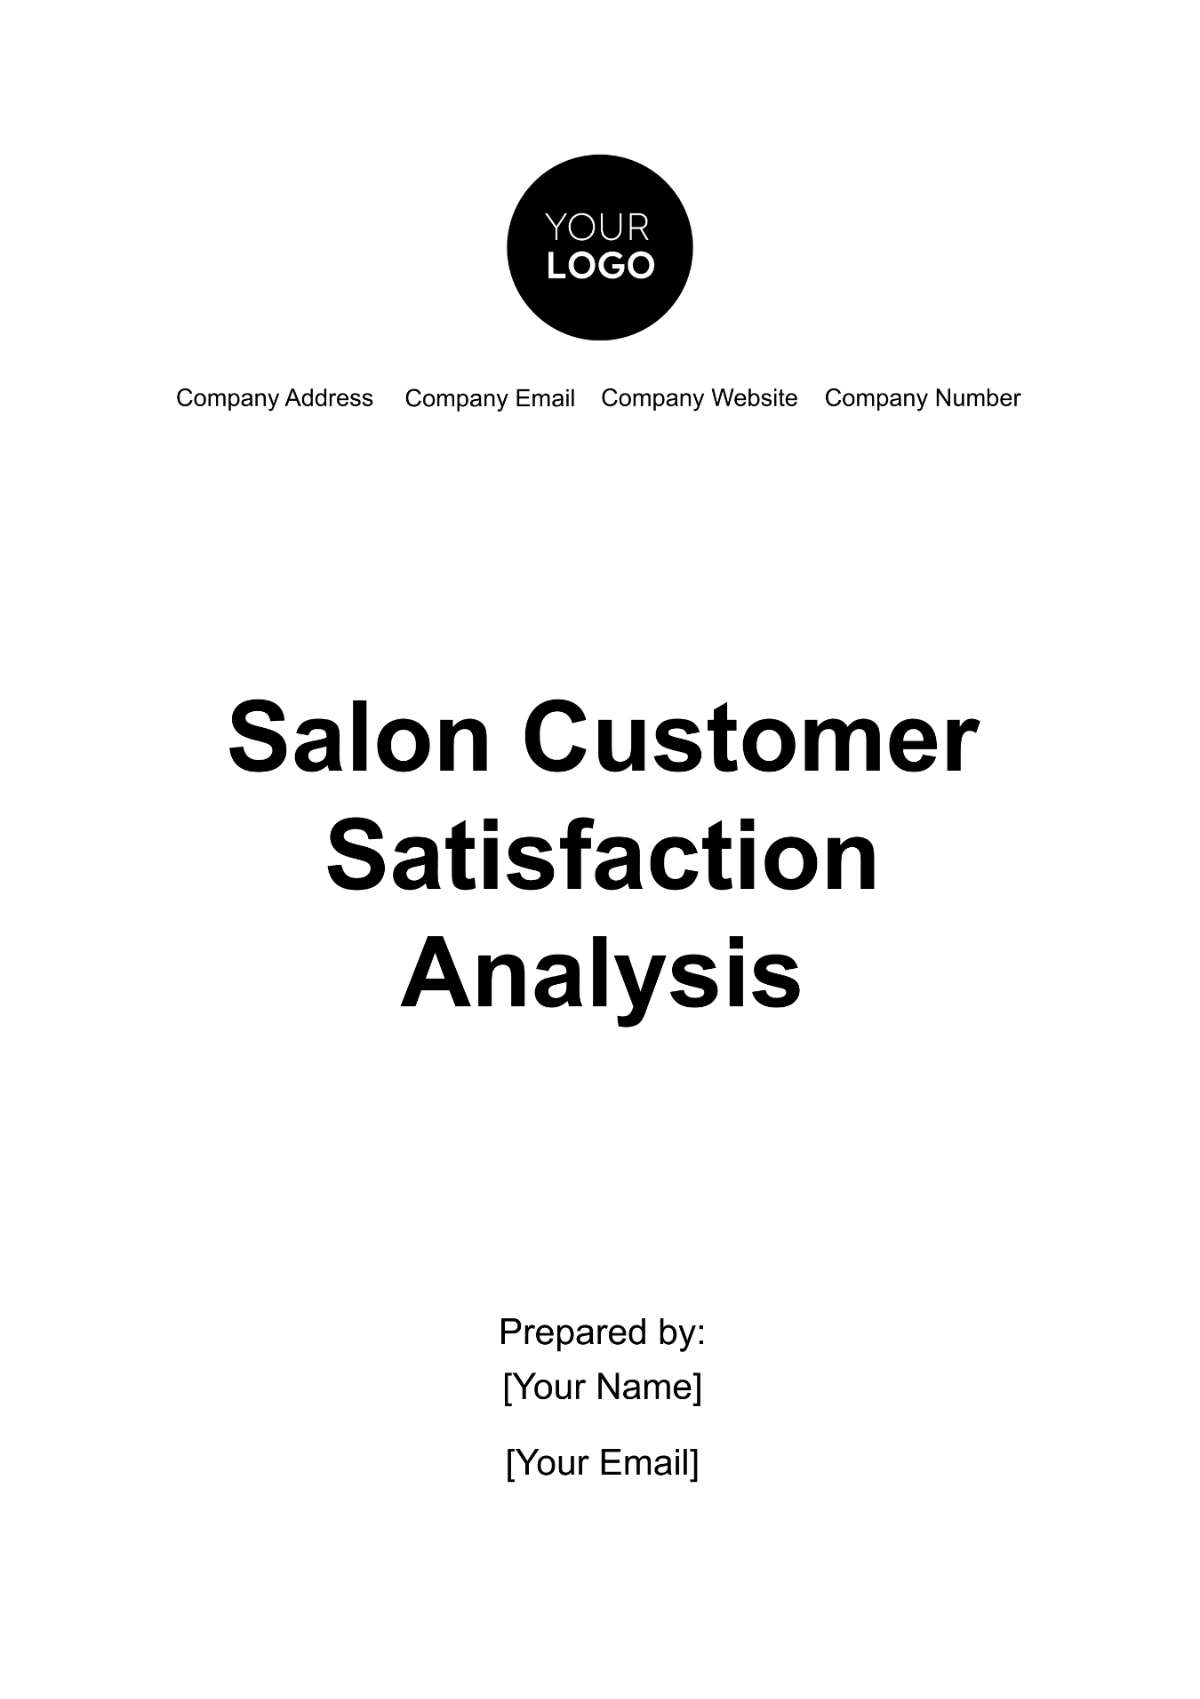 Salon Customer Satisfaction Analysis Template